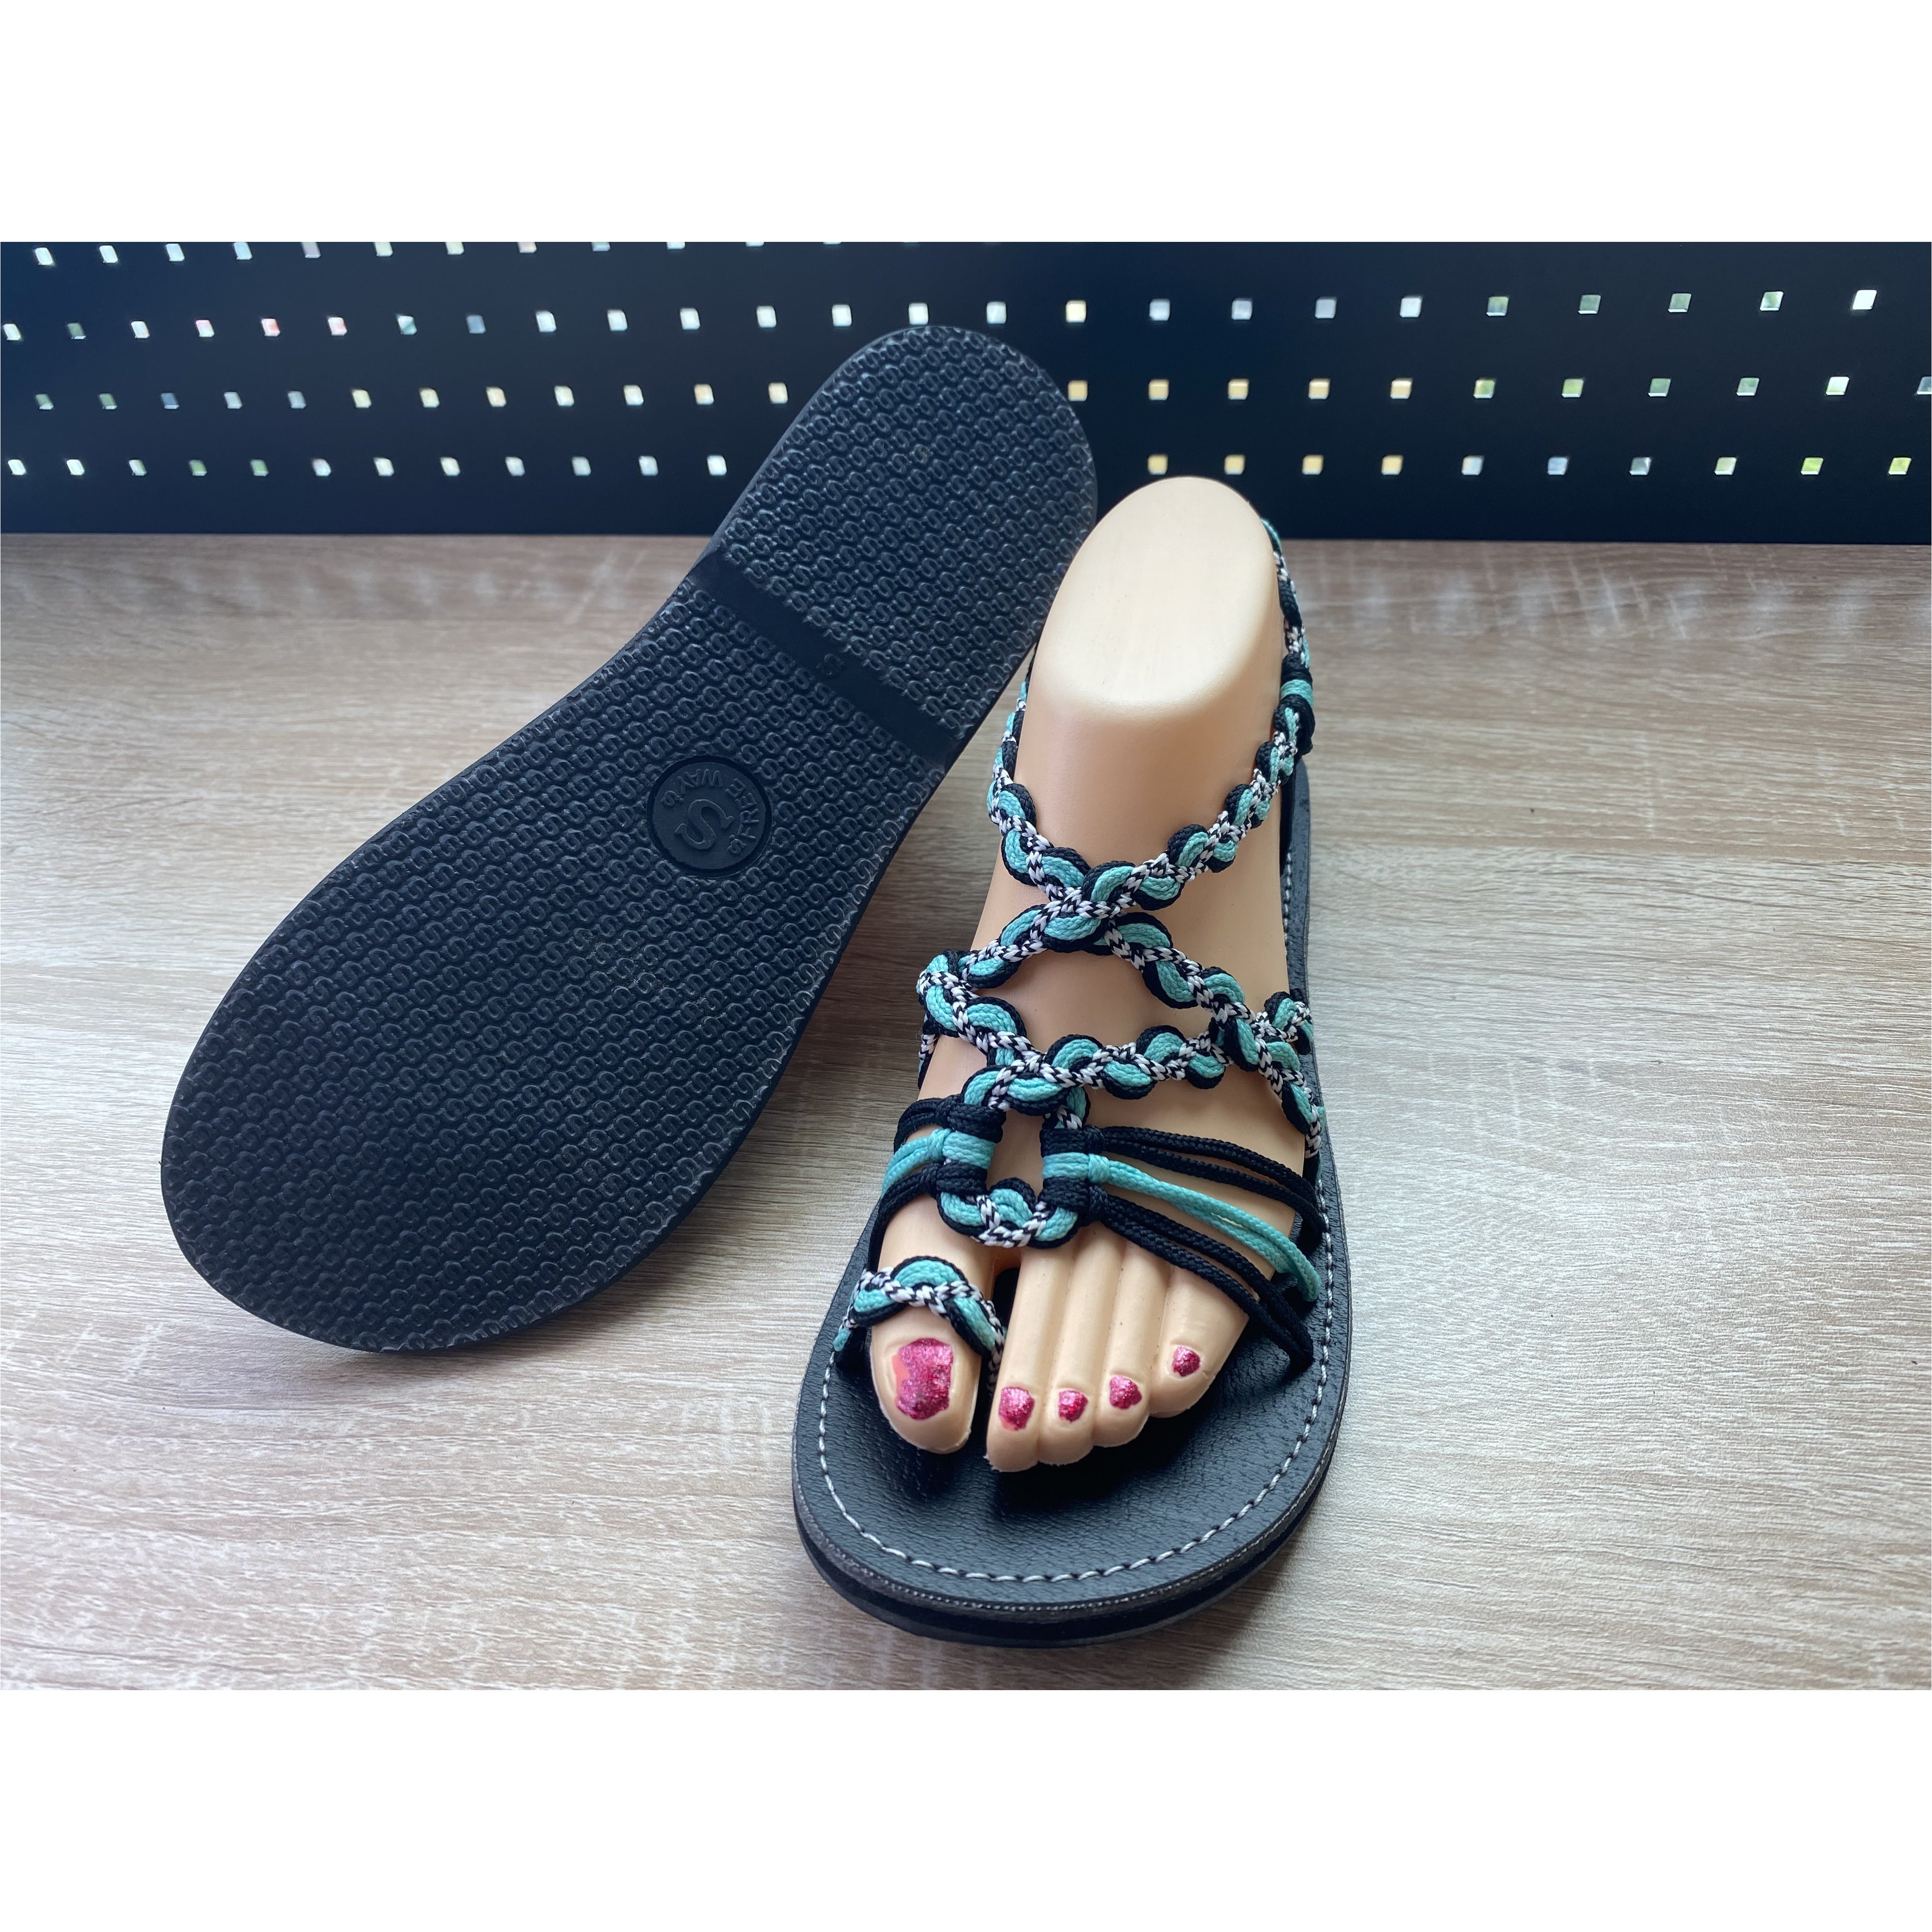 Shoes - Braided Sandal BLA/TUR